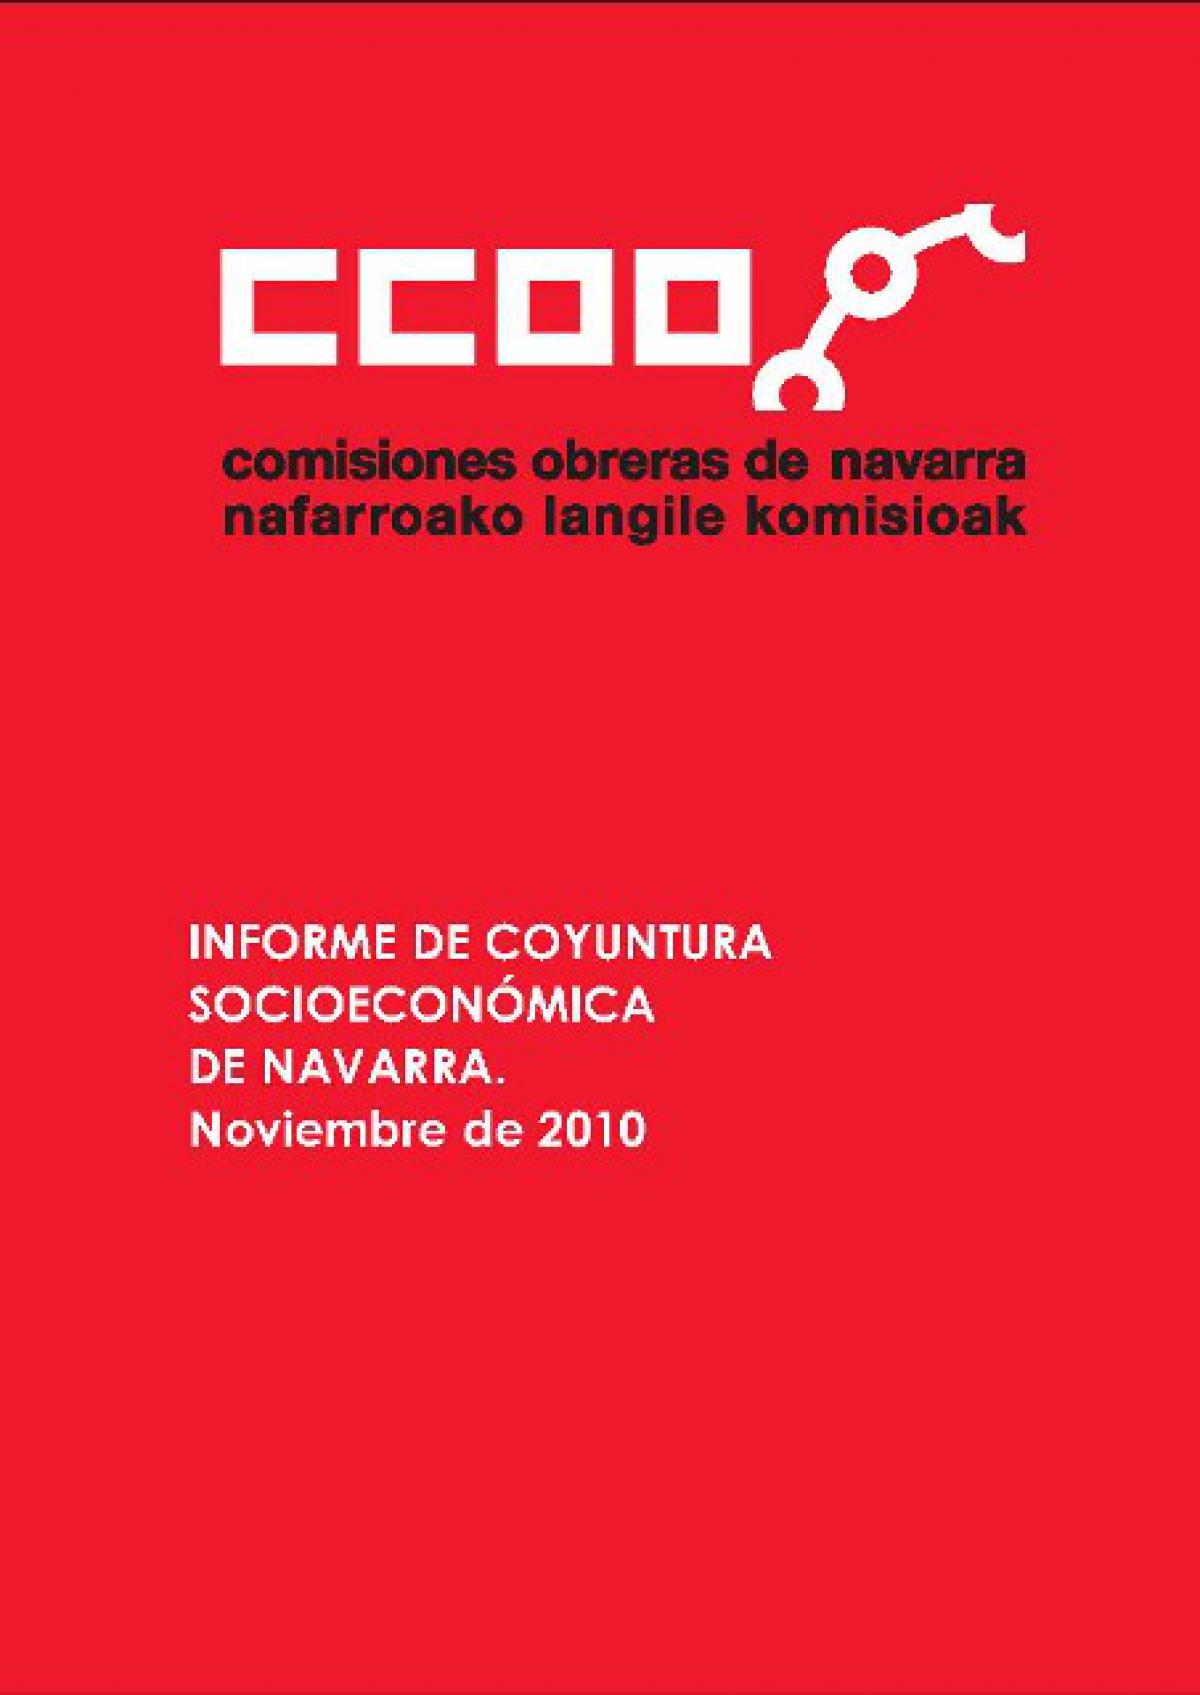 informe de coyuntura socioeconmica de navarra. noviembre 2010